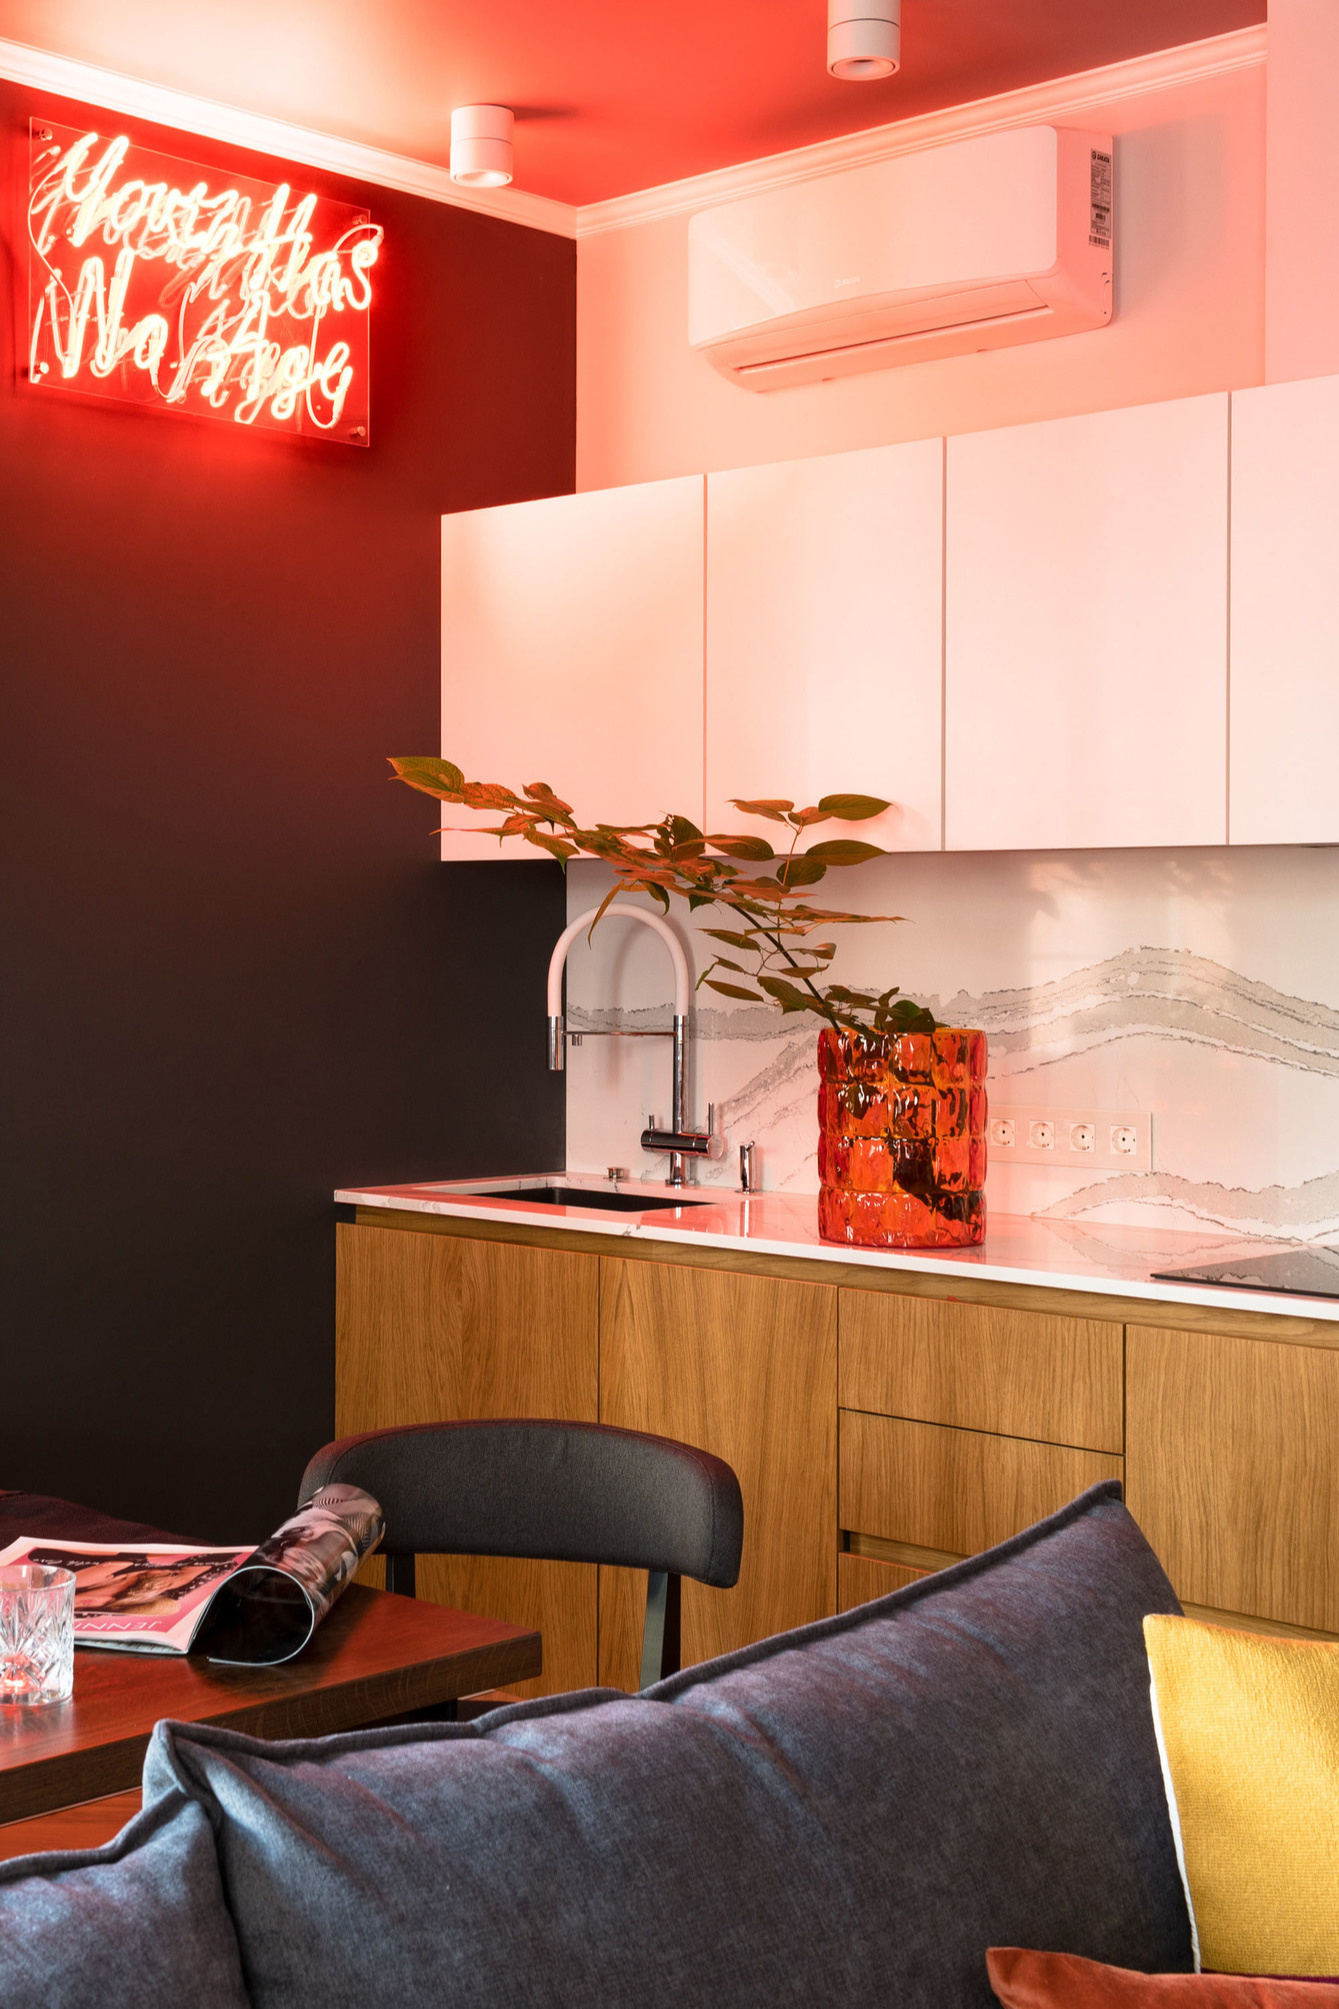 Phòng bếp có thiết kế kiểu chữ I, tủ bếp là sự kết hợp của sắc trắng và vật liệu gỗ nhẹ nhàng nhưng vẫn nổi bật nhờ bức tường sơn màu đỏ cùng đèn LED bắt mắt.